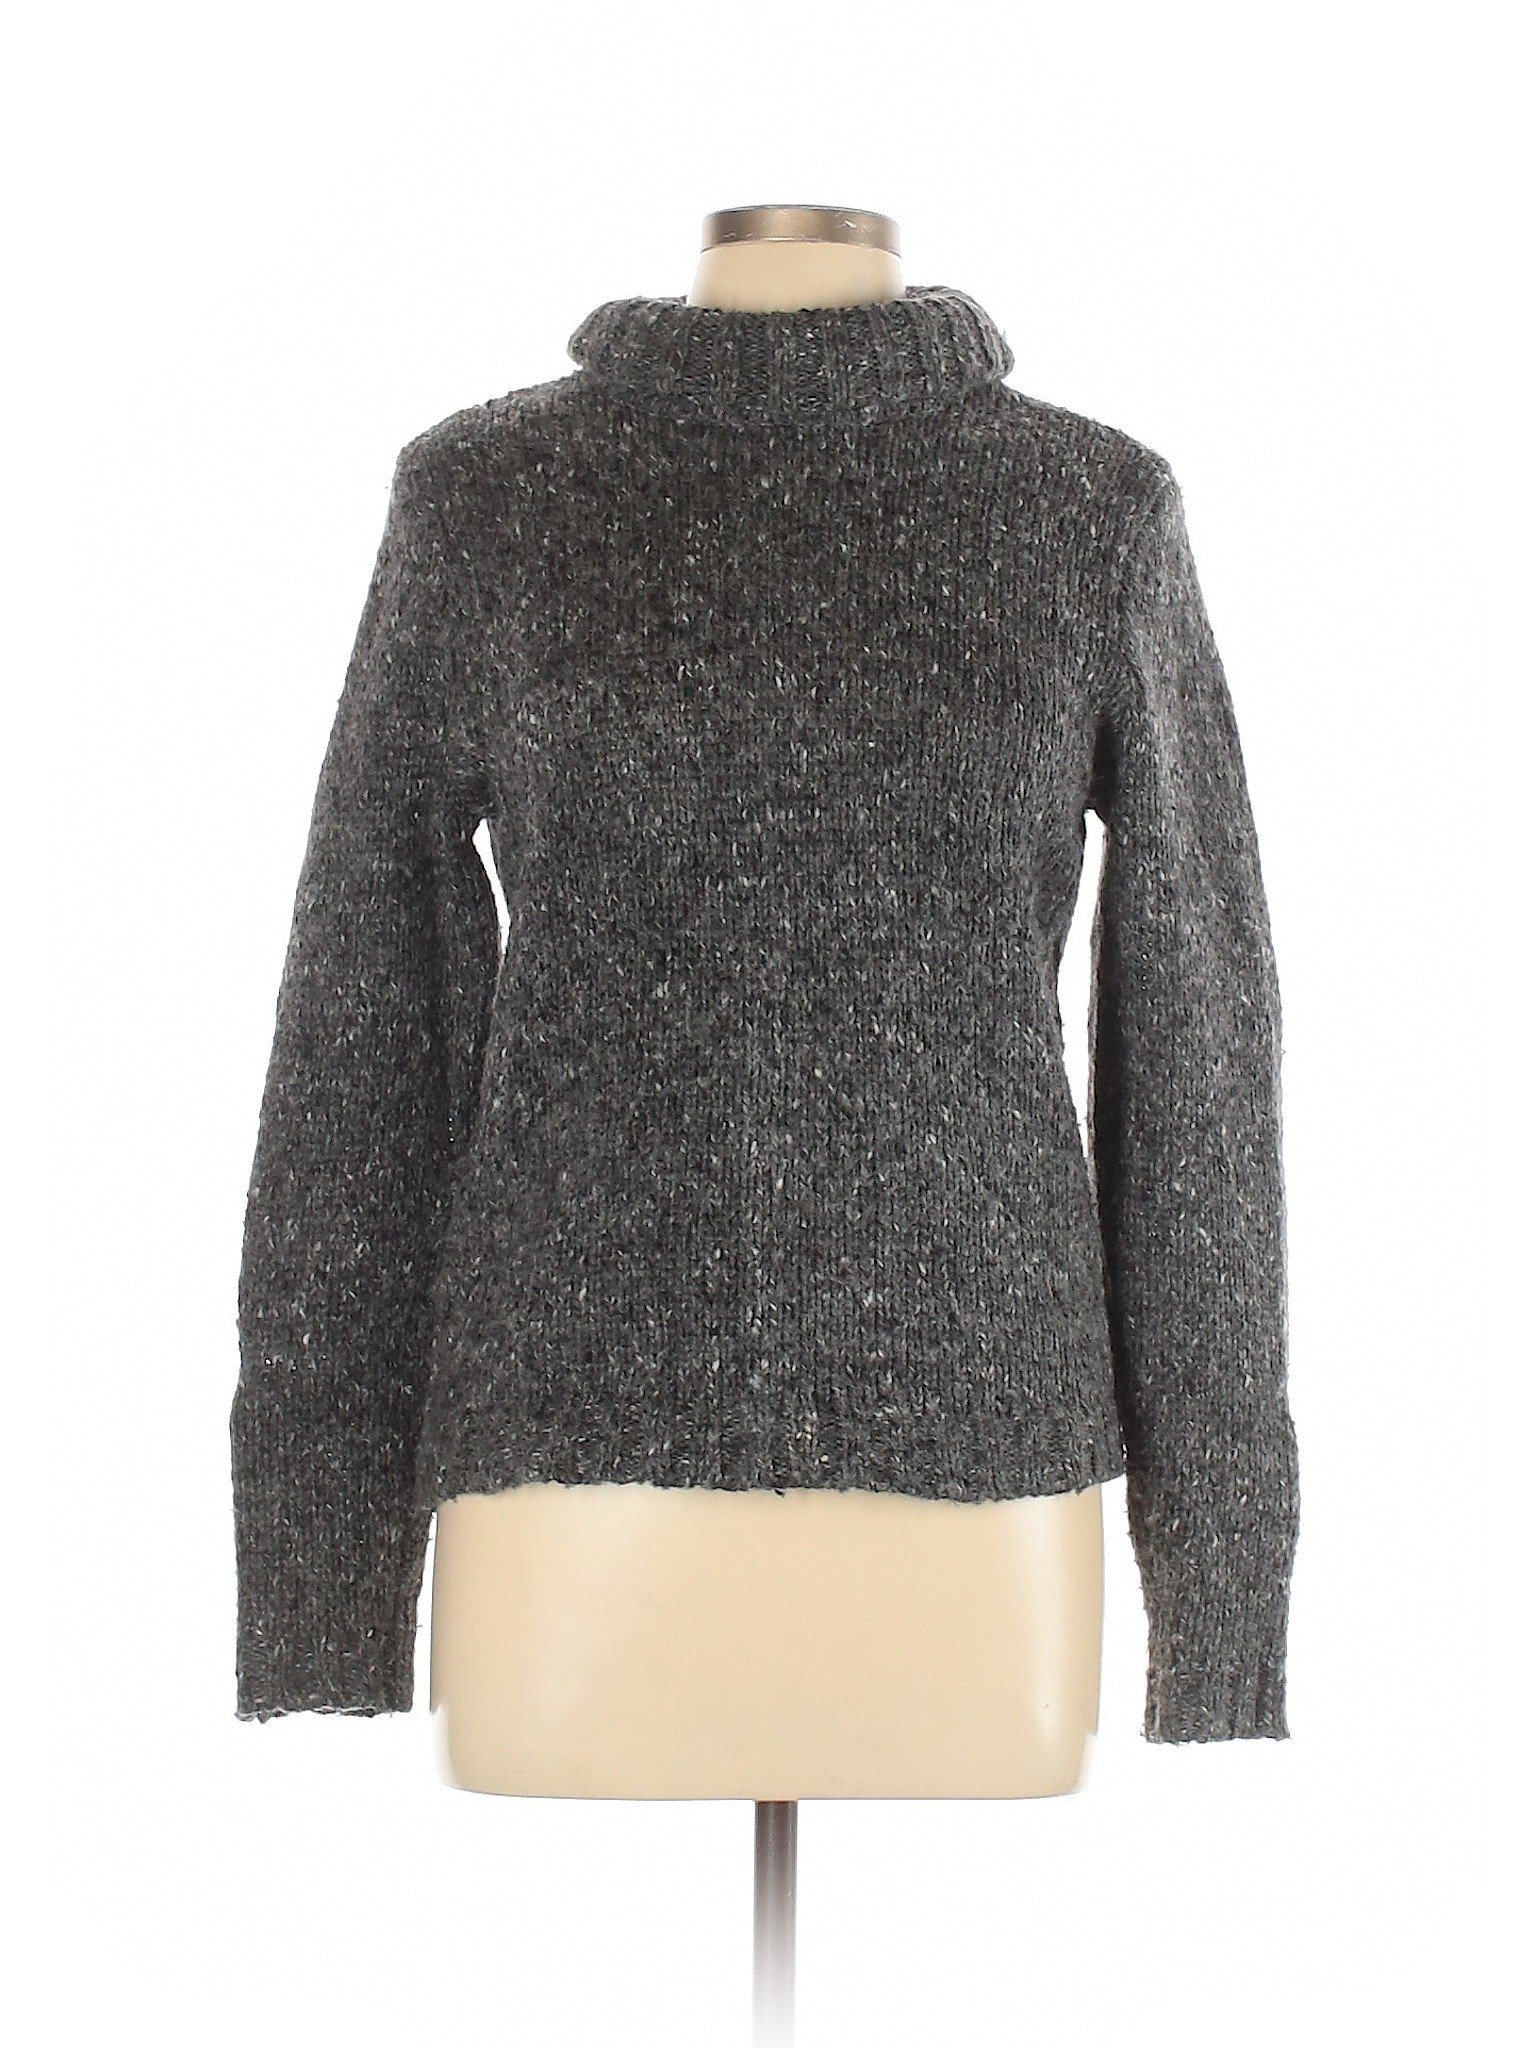 Lauren by Ralph Lauren Gray Turtleneck Sweater Size L - 84% off | thredUP